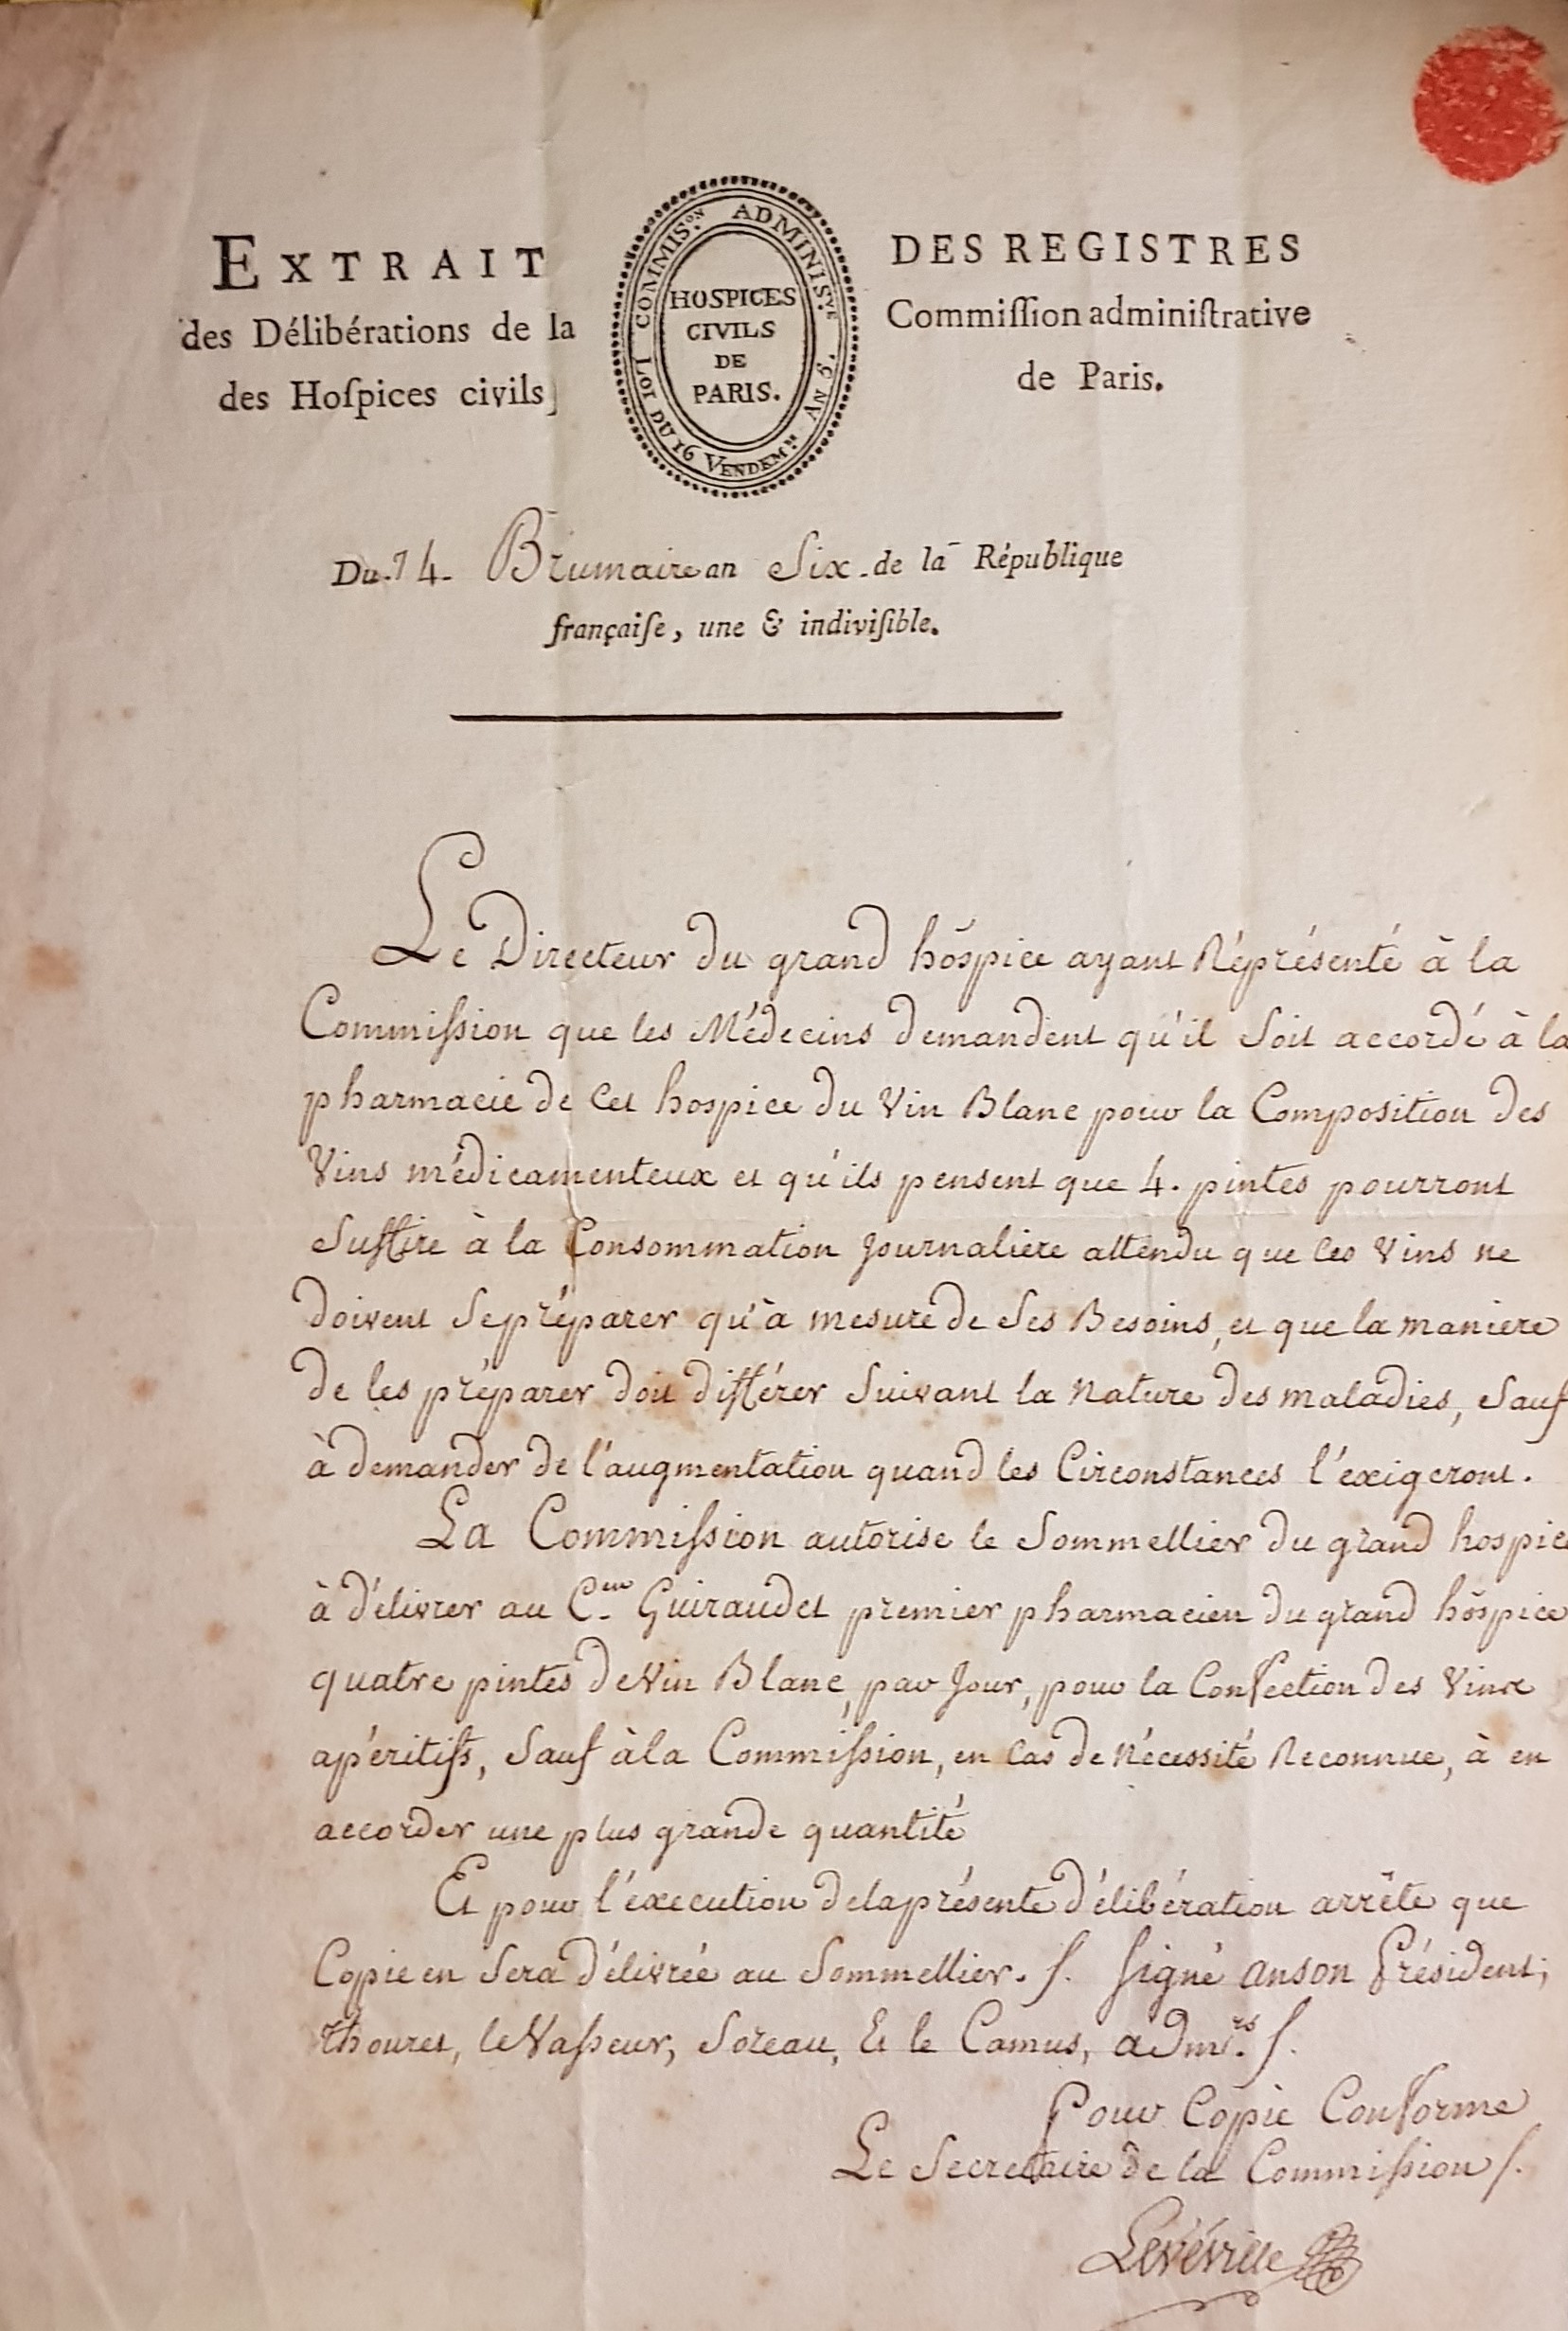 Extrait des délibérations de la commission administrative des hospices civils de Paris, octobre 1797.